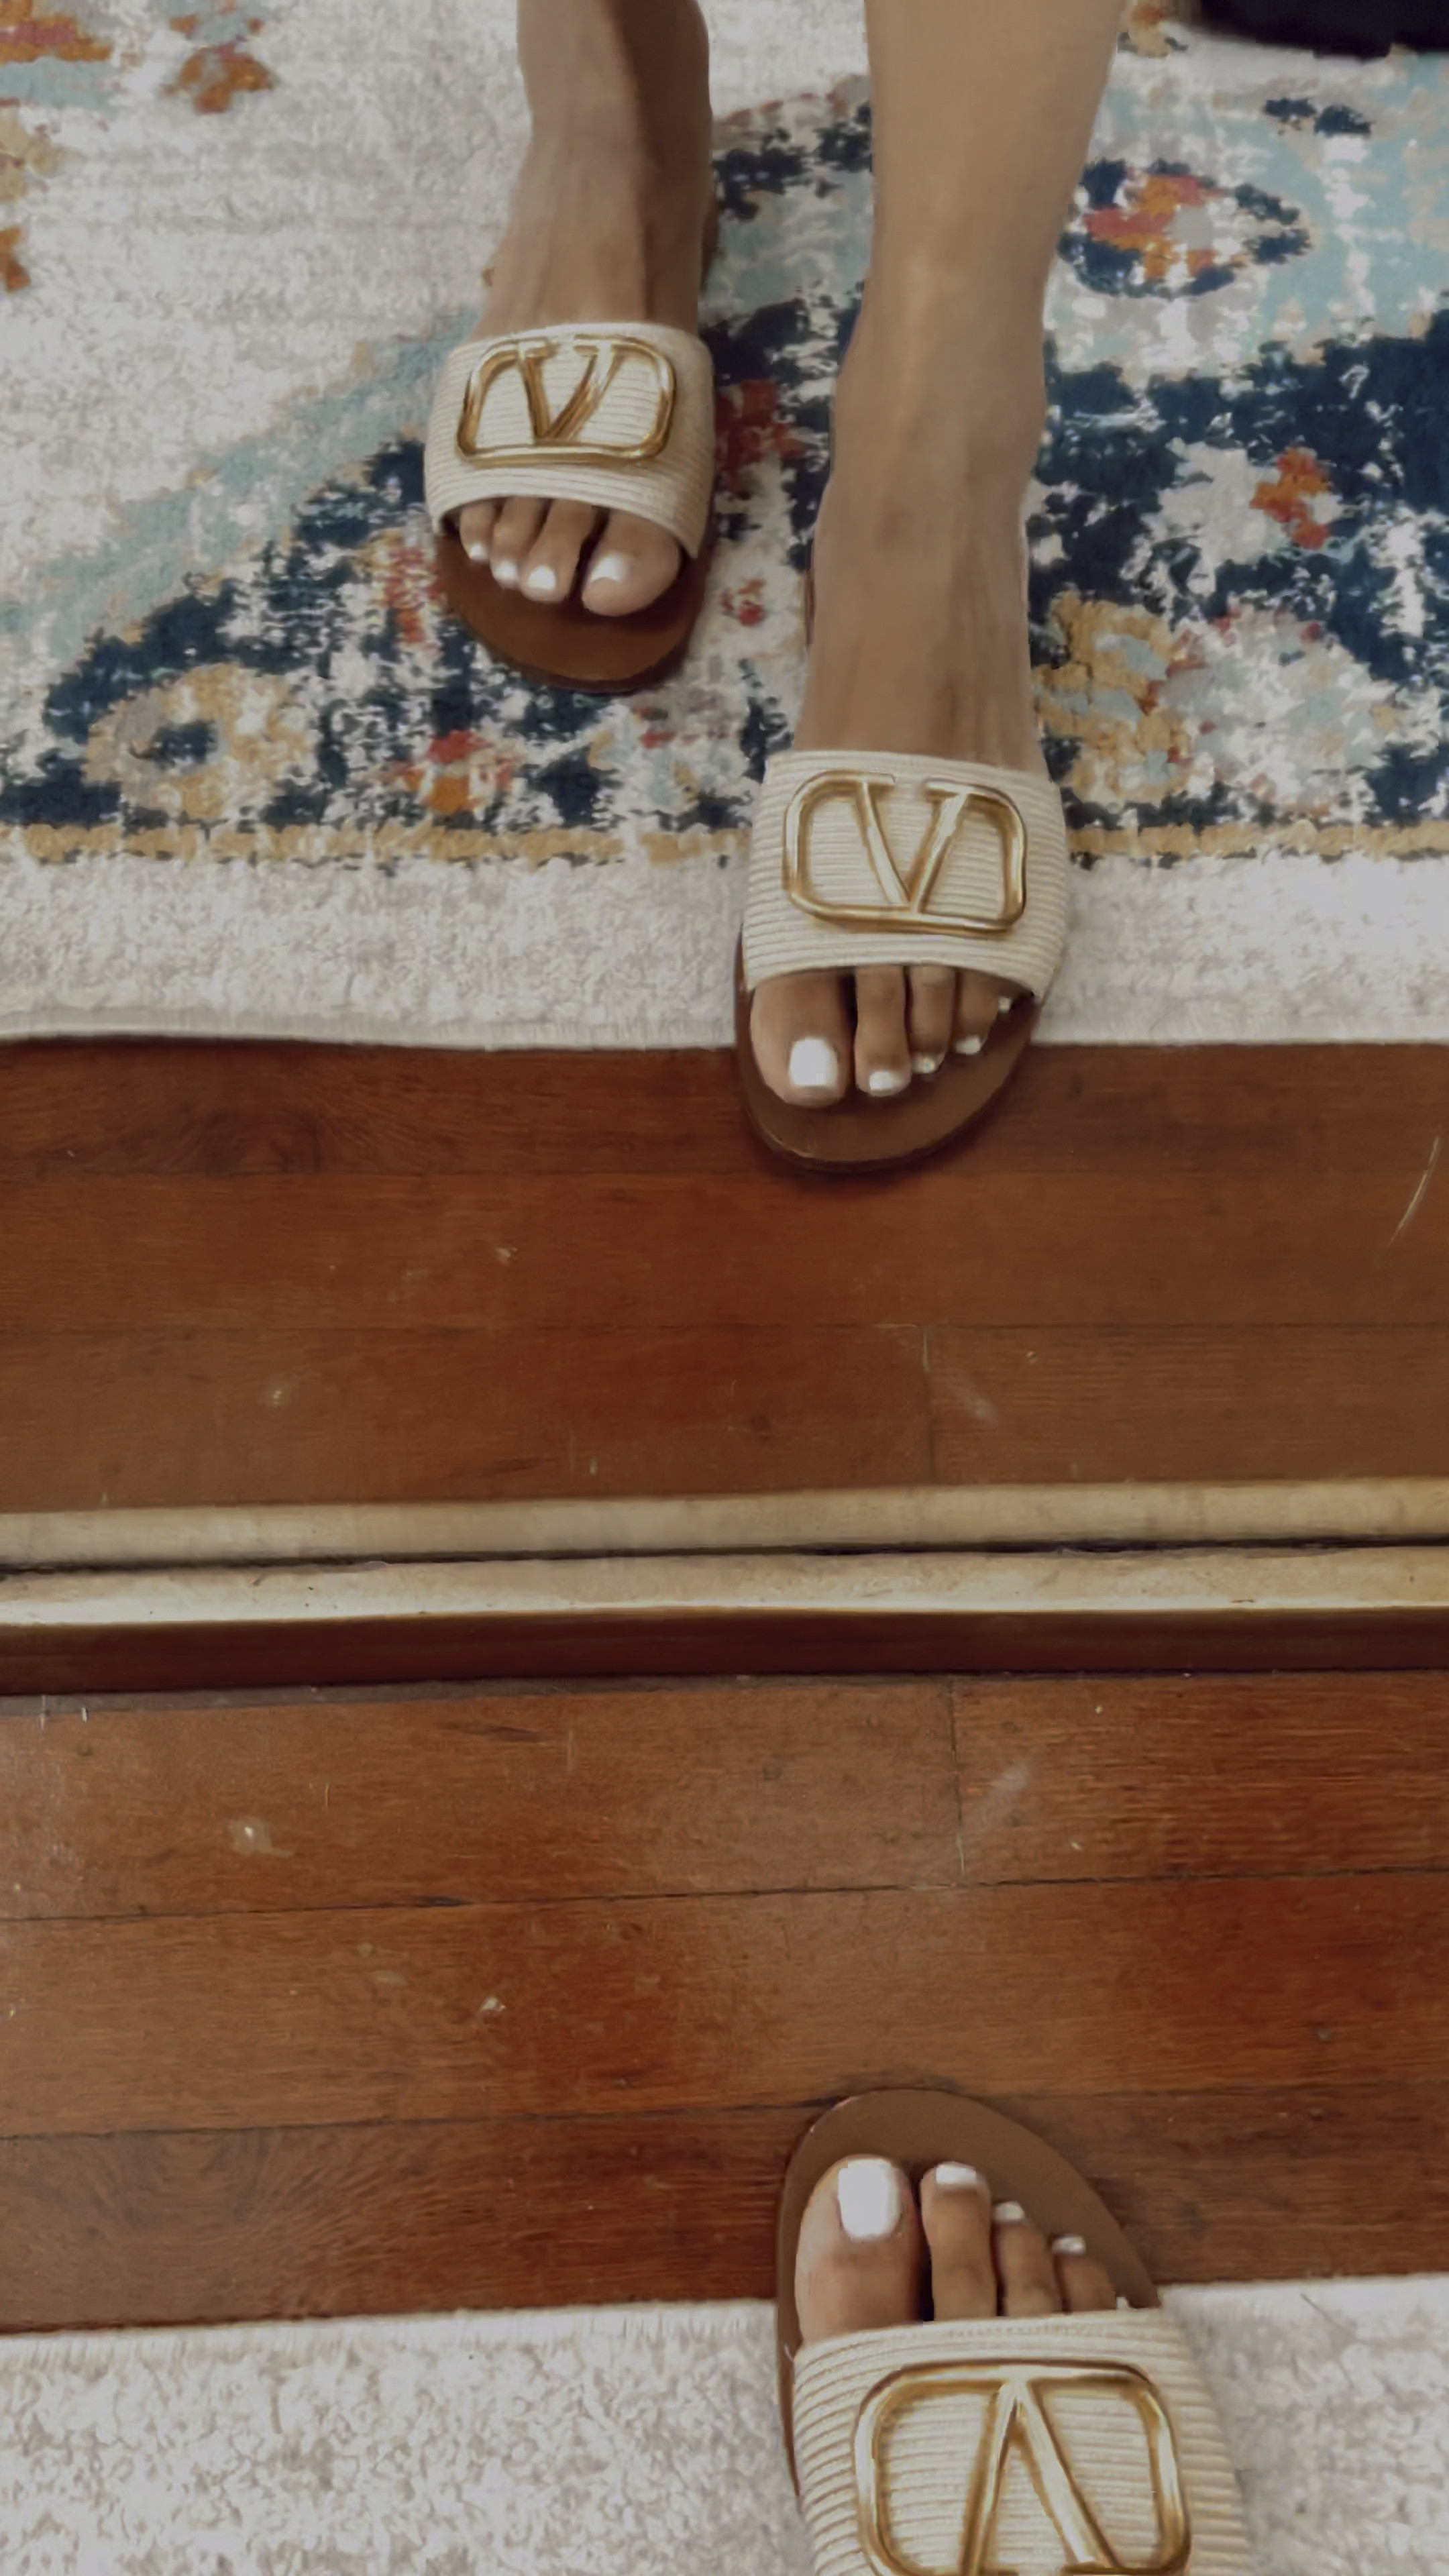 Valentino Garavani VLogo-plaque Slide Sandals - Black